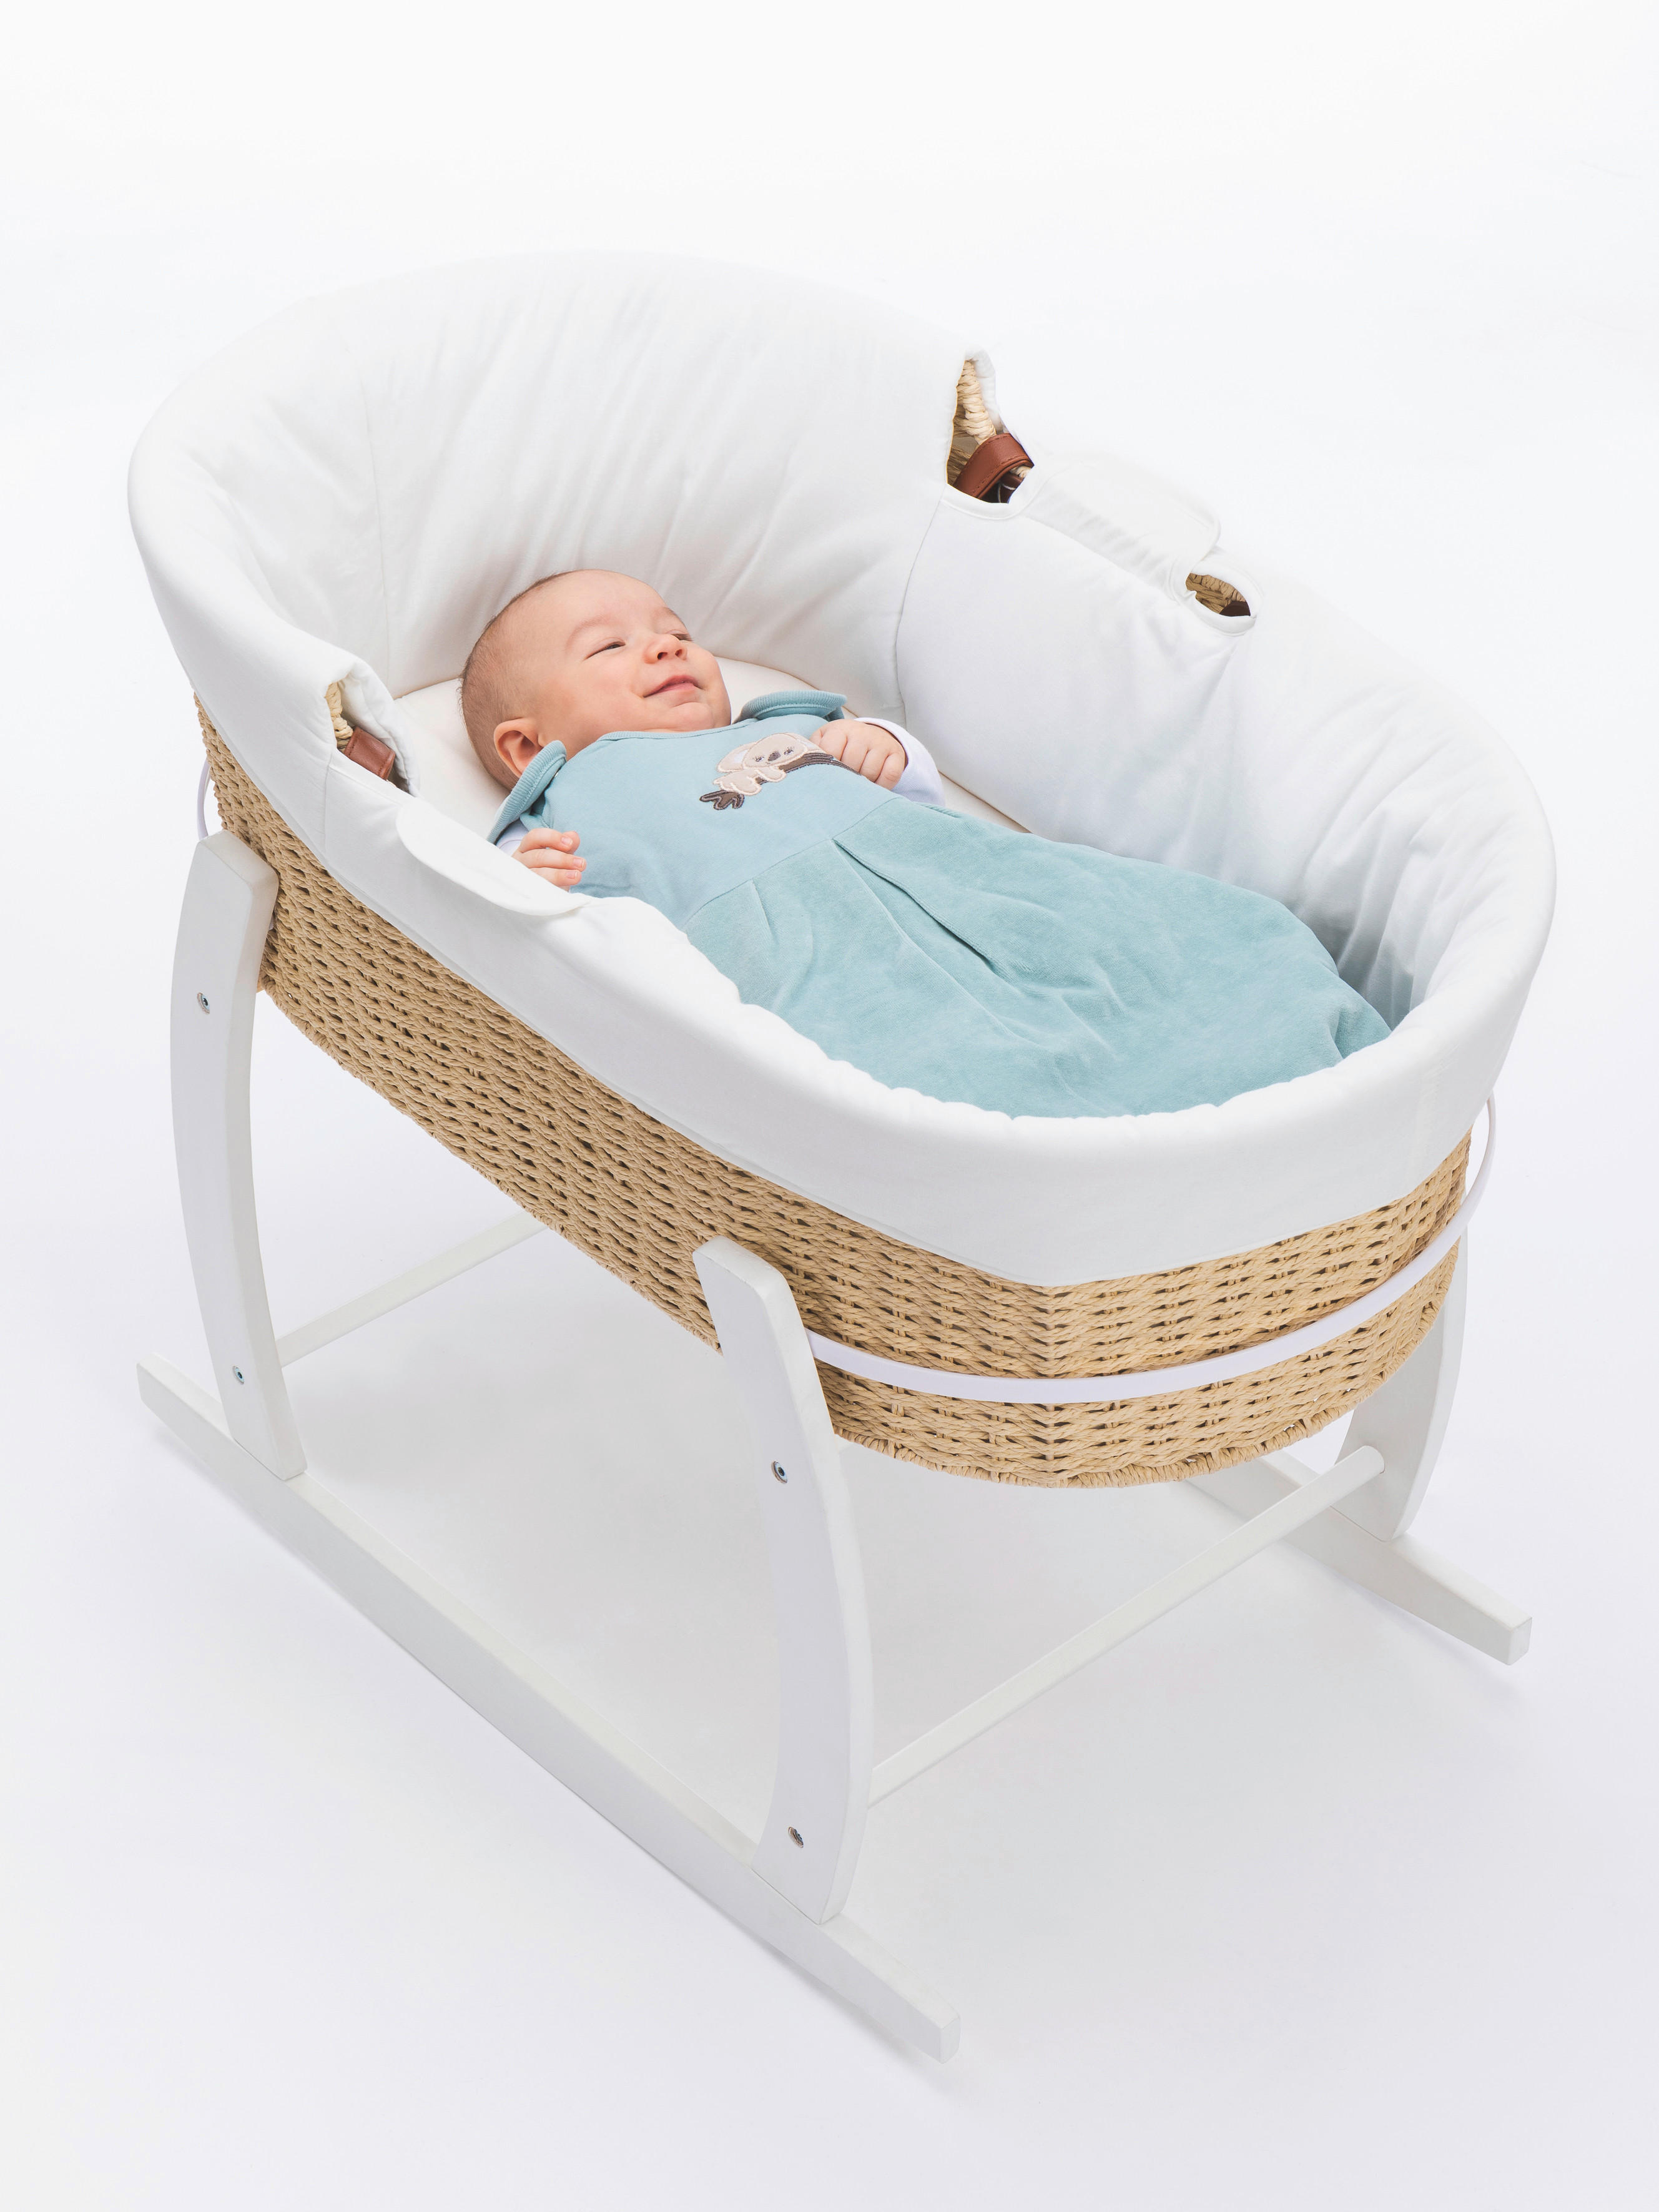 Magent Baby Stubenwagen Hängematte Baby Krippe Hängematte Atmungsaktiv Tragbar Sicher Komfortabel Säuglingsschutzbett Hängematte 